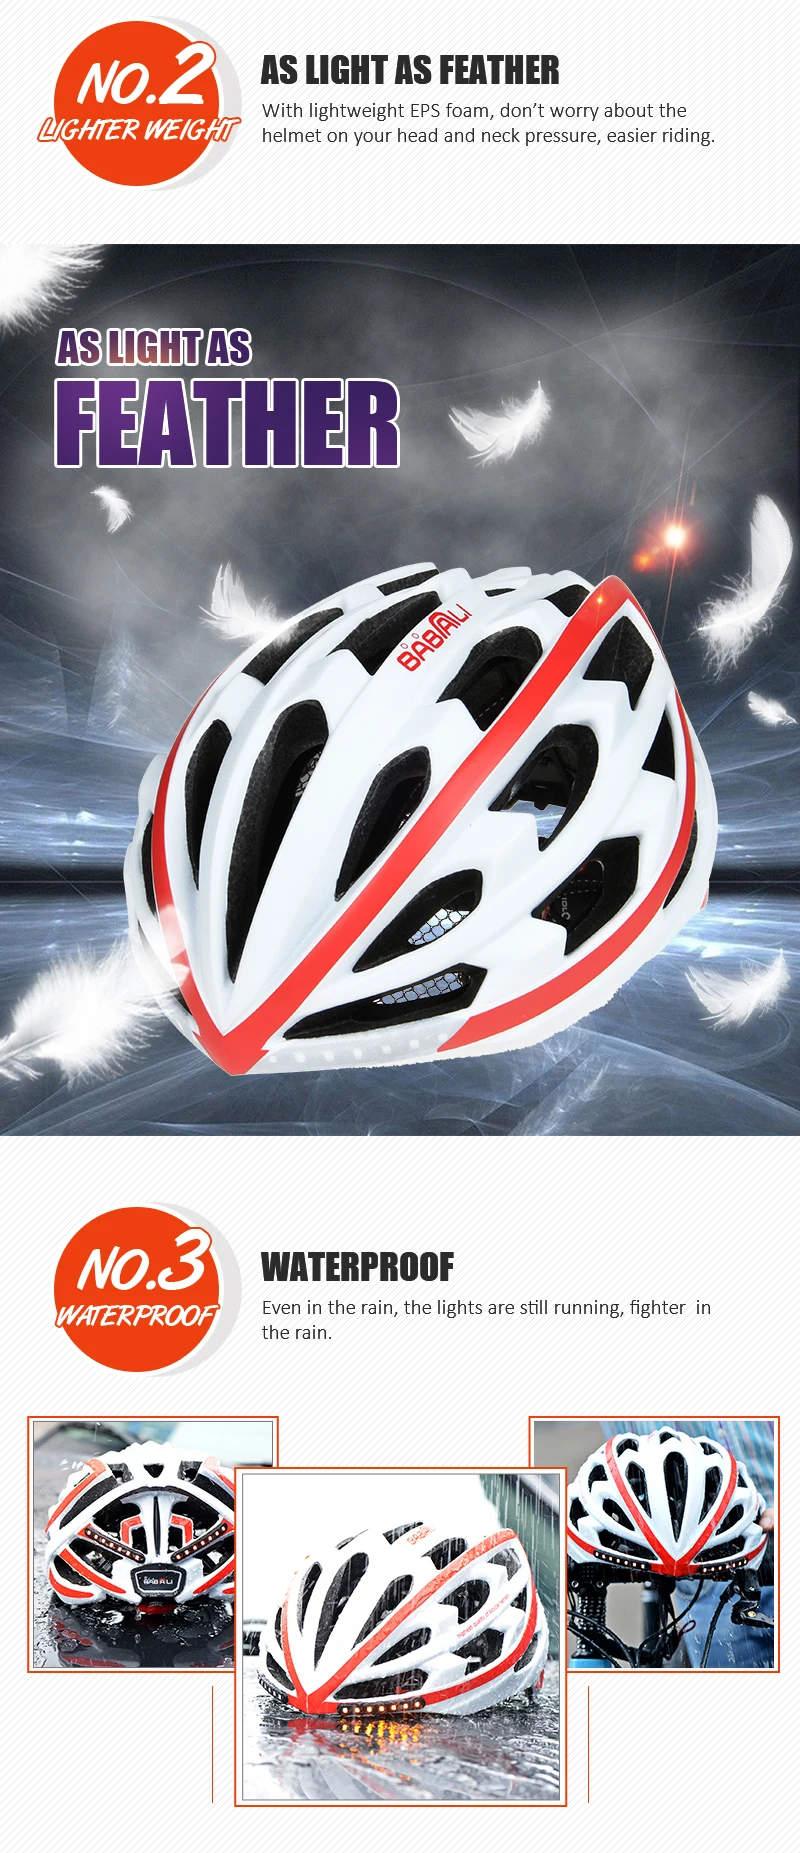 BABAALI шоссейный велосипед шлем ультралайт Световые индикаторы взрослые велосипедные шлемы 33 вентиляционные отверстия дышащие шлемы